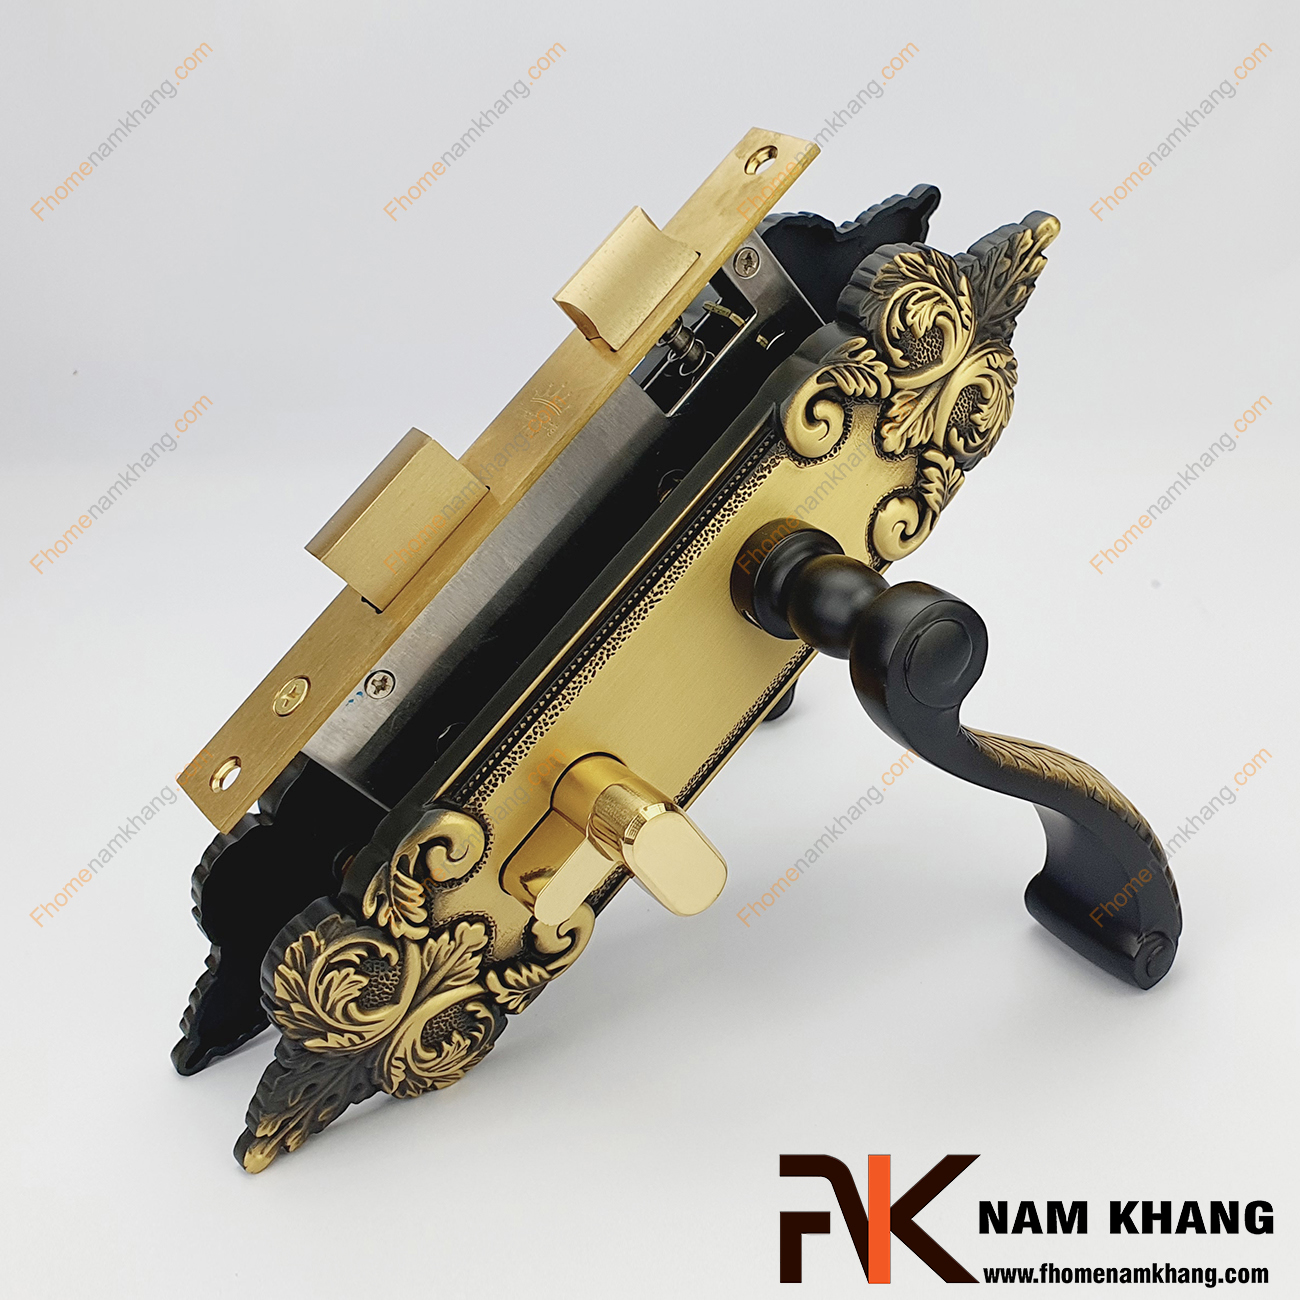 Khóa cửa thông phòng cố điển màu đồng đen NK342M-BCF, một dạng mẫu khóa cửa đồng cao cấp theo thiết kế cổ điển với đồng vàng mạ lớp màu phối đen tạo điểm nhấn cho sản phẩm chất lượng.